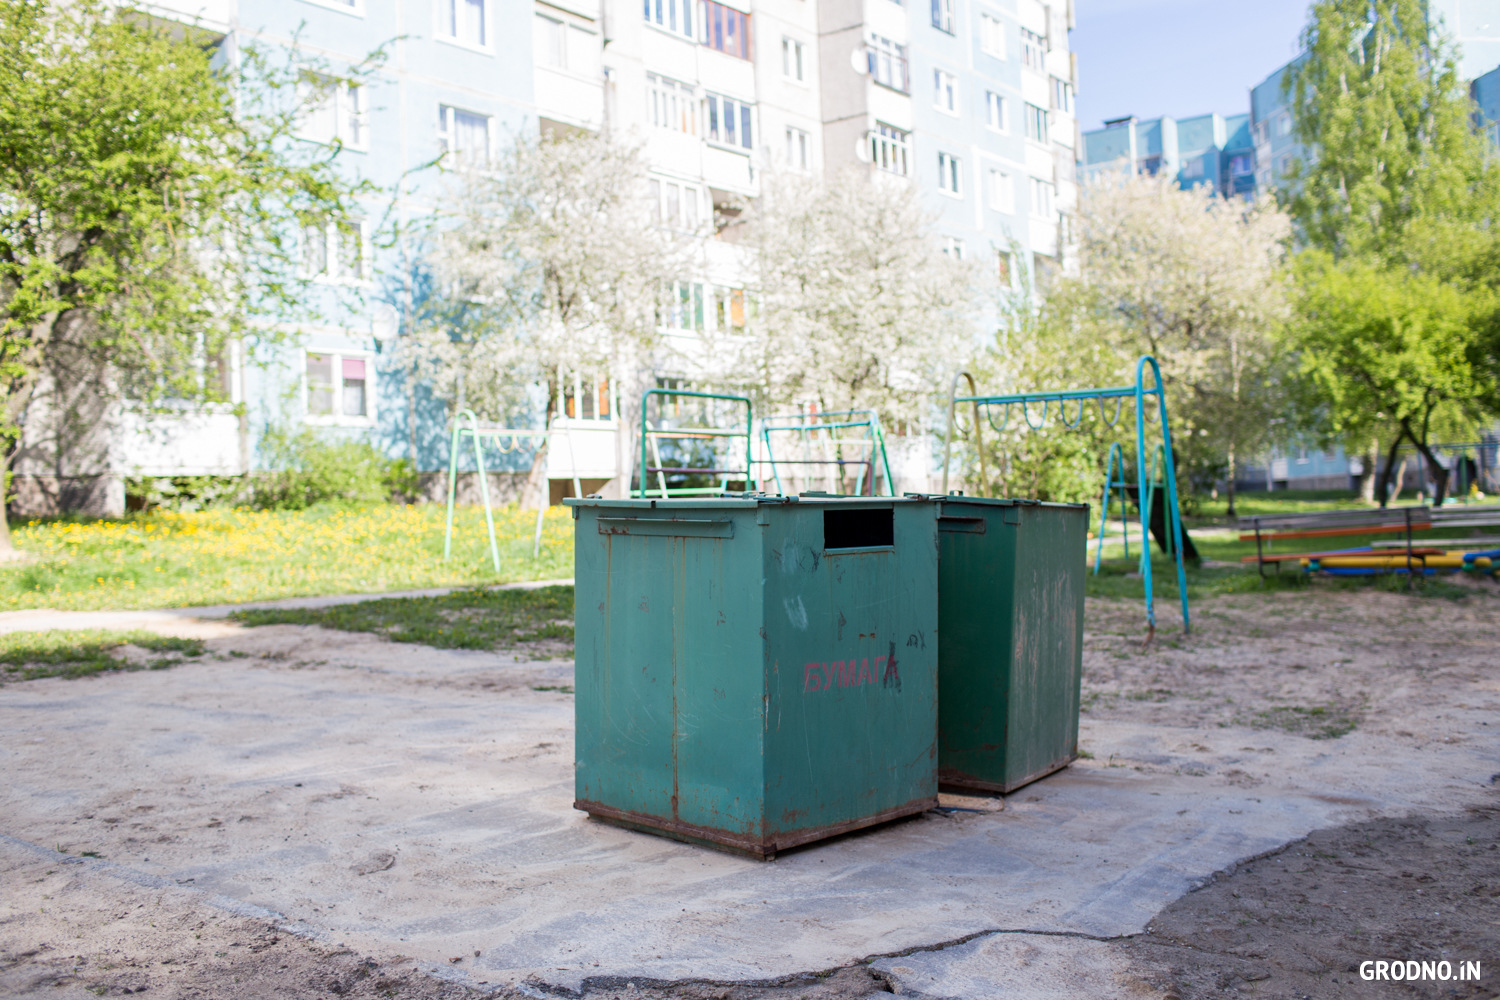 Соседний двор, на котором мусорные баки установлены на детской площадке